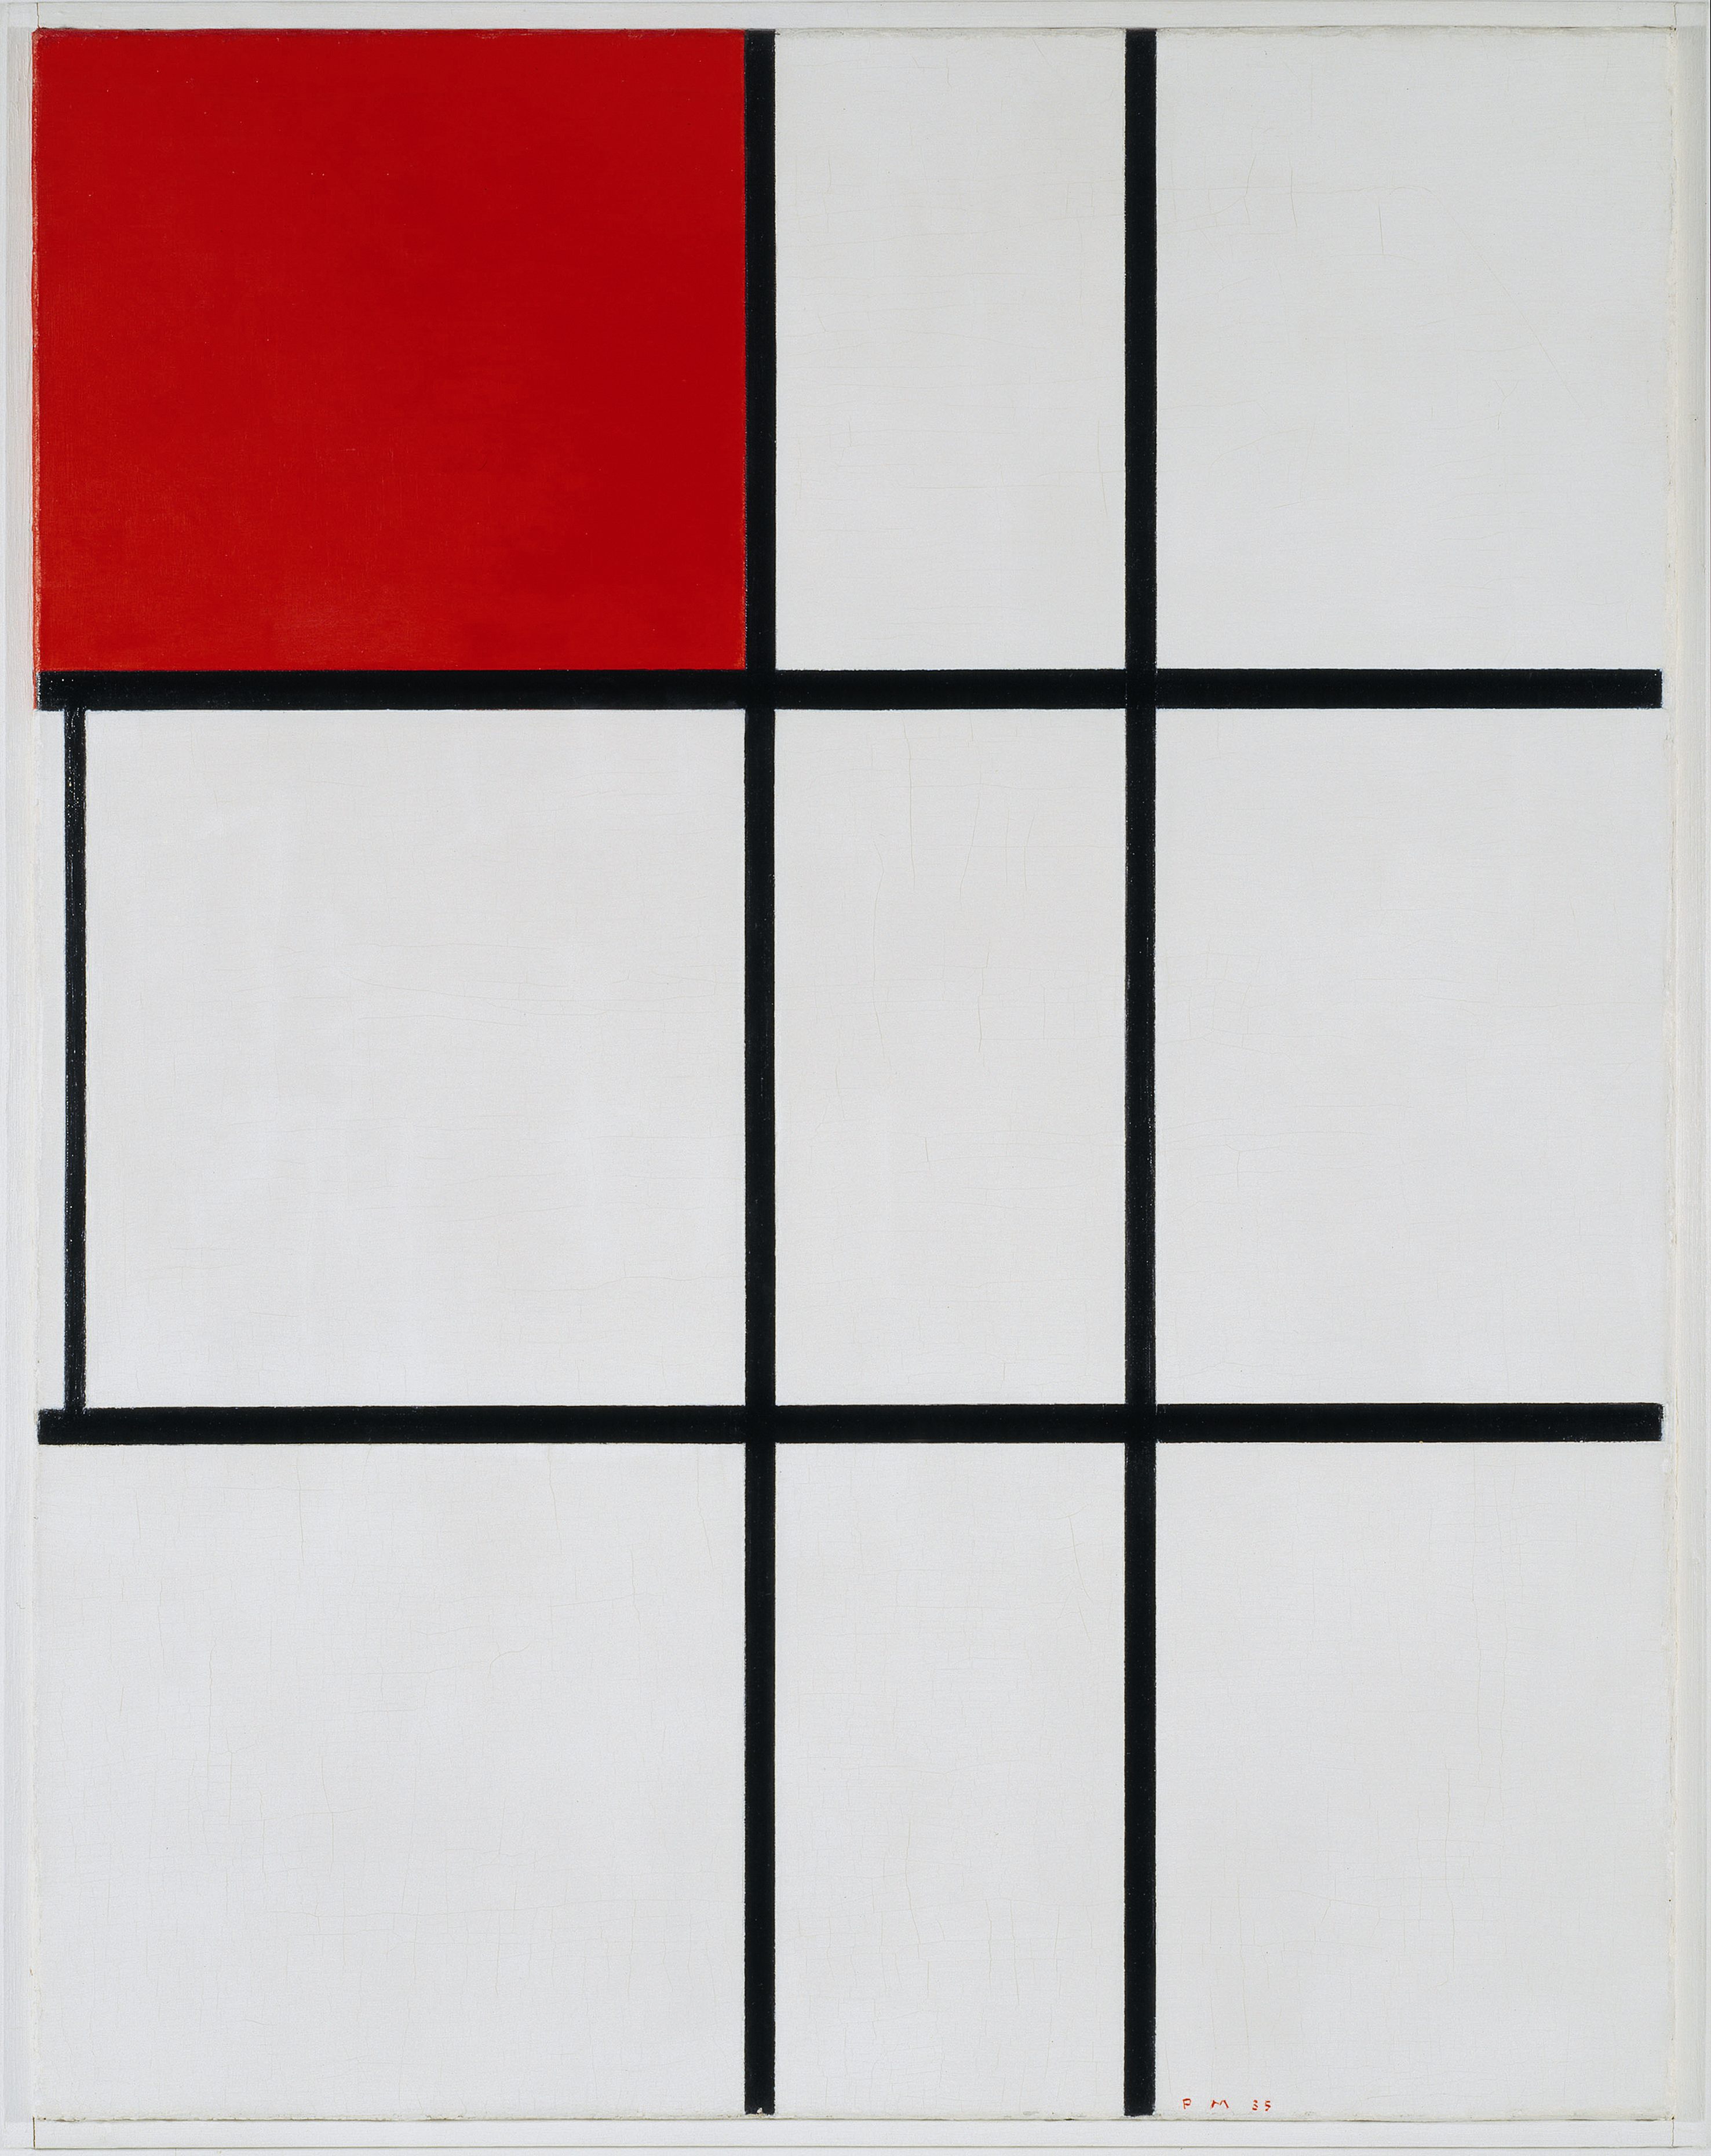 Composizione B (no. II) con Rosso by Piet Mondrian - 1935 - 80.3 cm × 63.3 cm Tate Modern